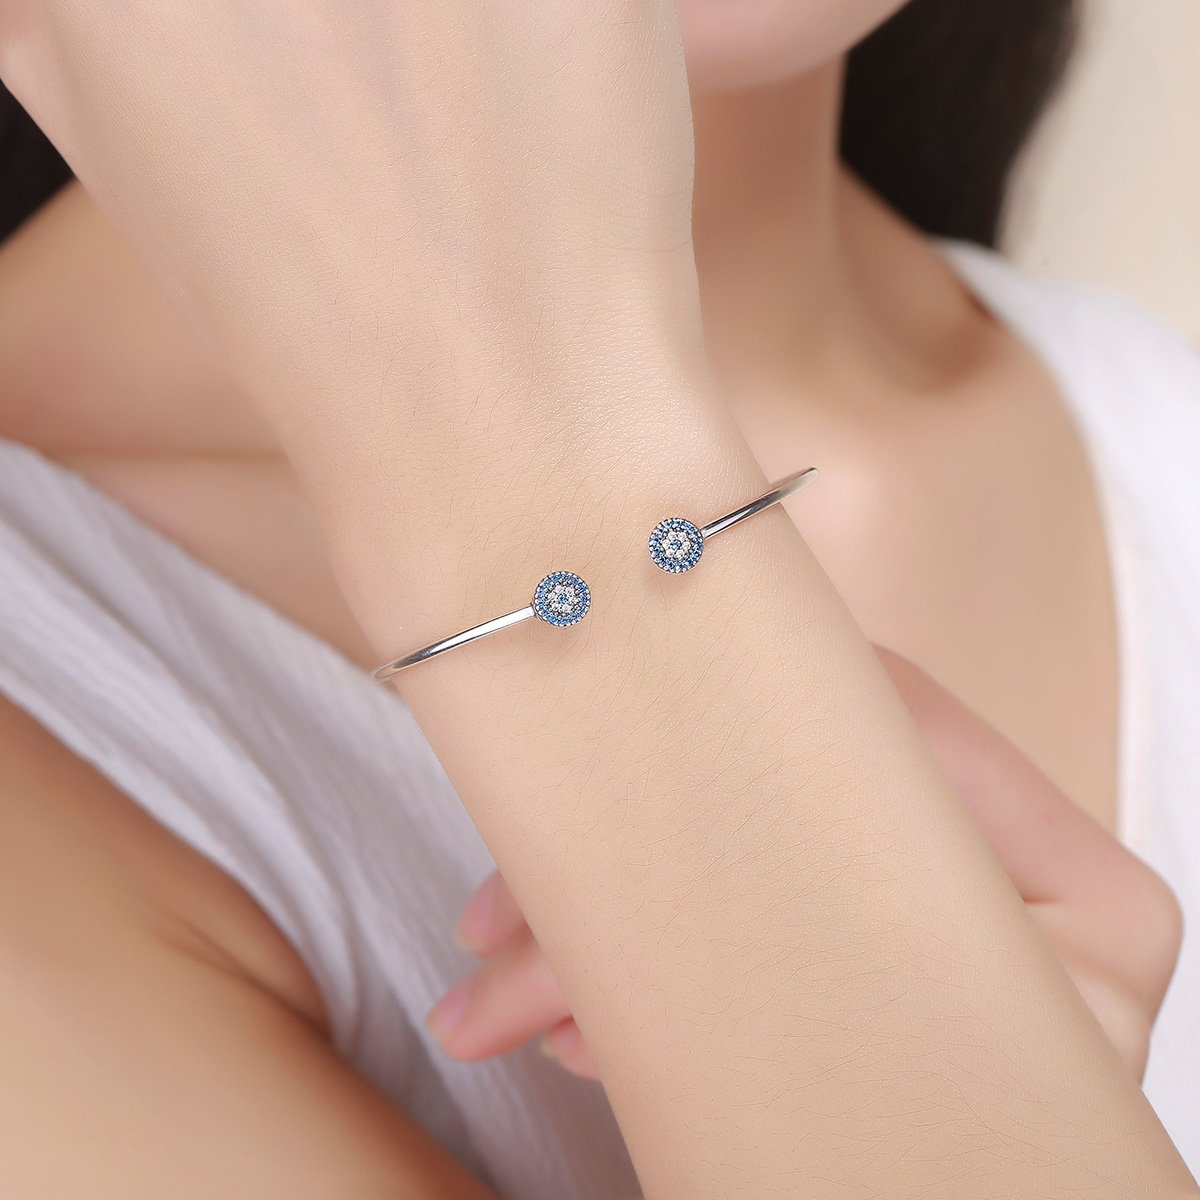 Blue Eyes Open Cuff 925 Sterling Silver Bracelet - Aisllin Jewelry